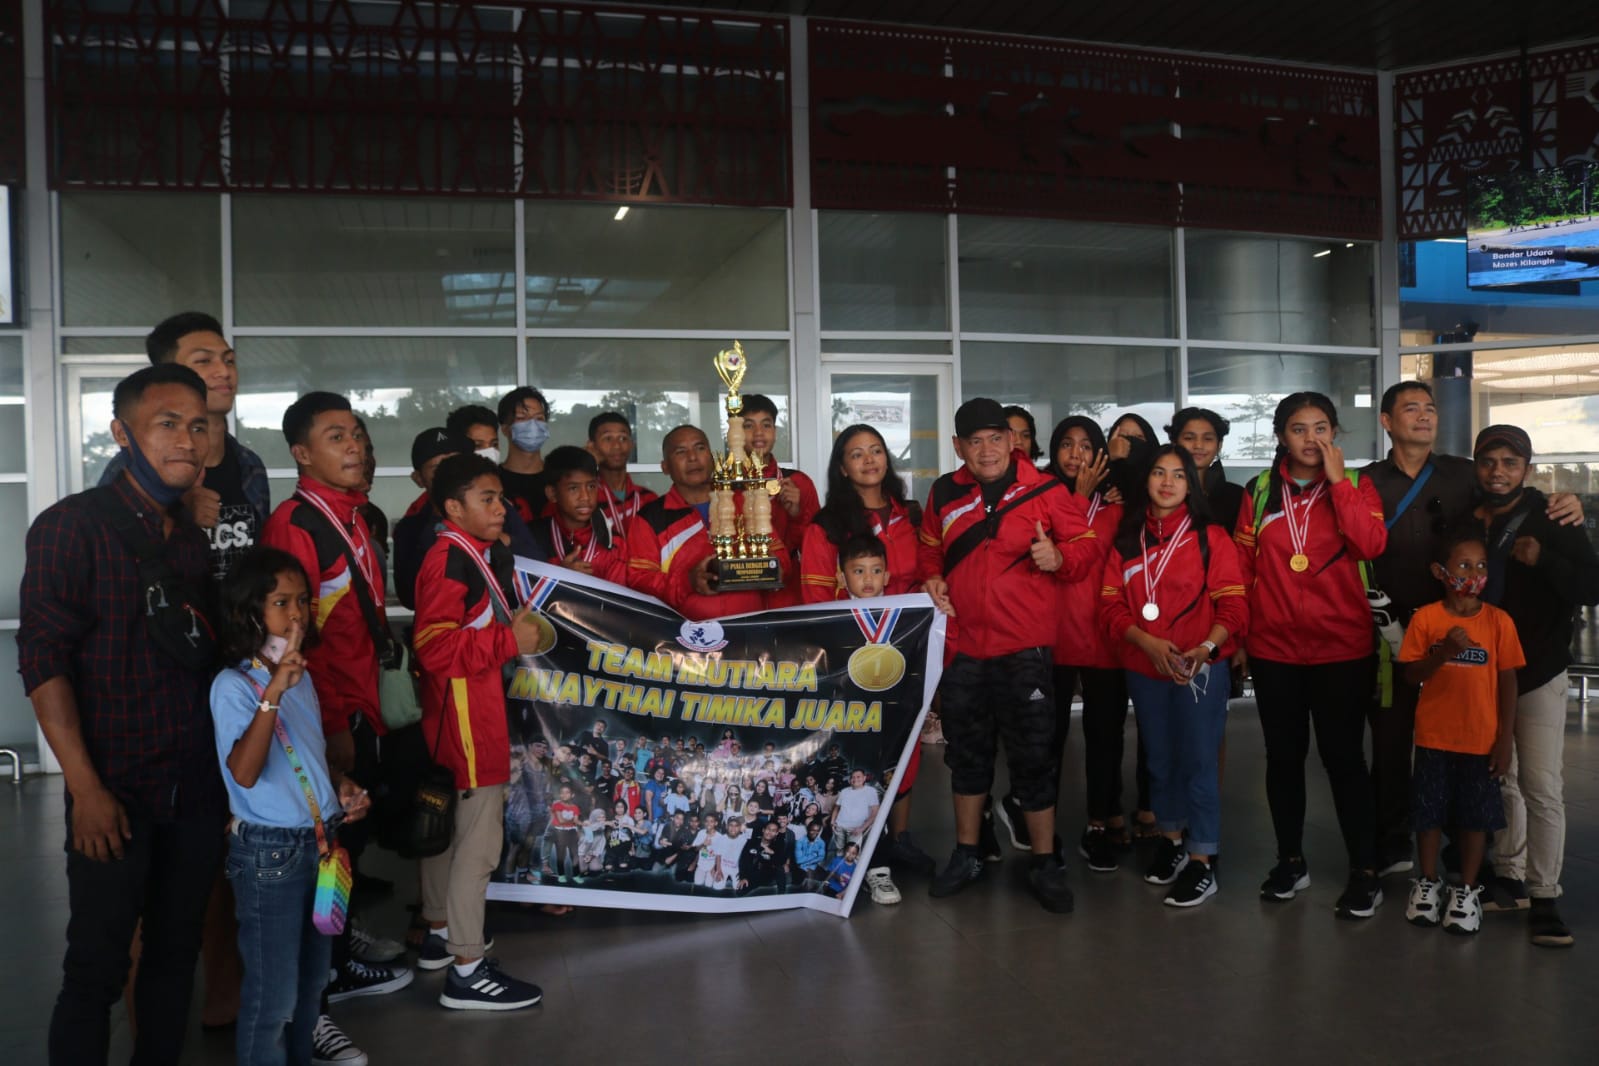 Atlet Muay Thai Timika yang berhasil meraih juara umum saat tiba di Bandara Mozes Kilangin Timika.